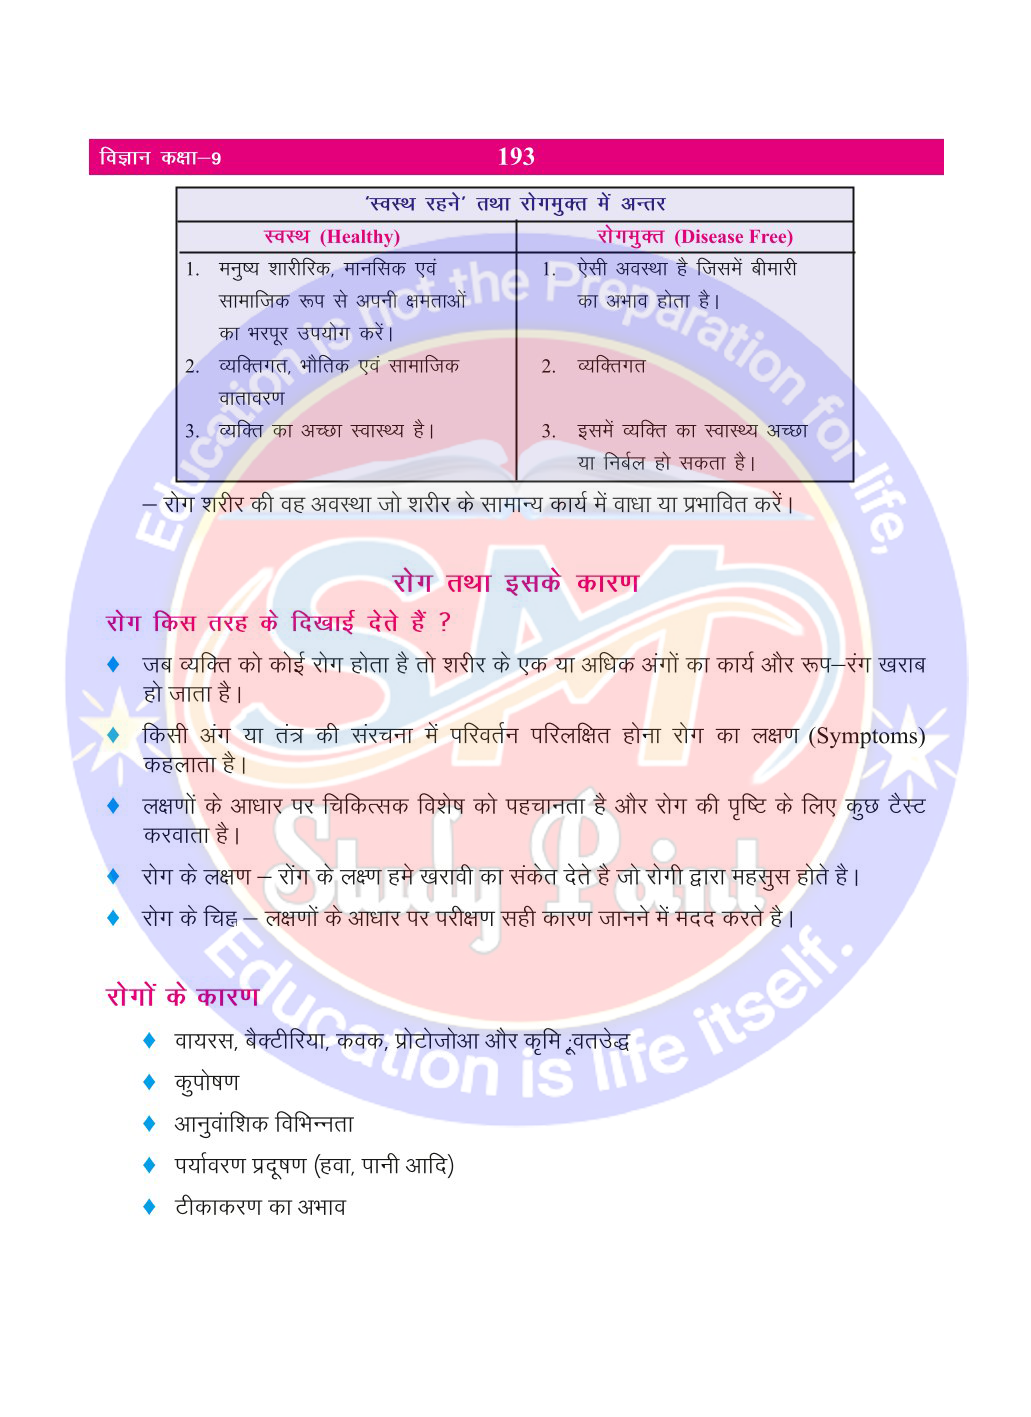 Bihar Board Class 9th Biology  Why do we get sick  Class 9 Biology Rivision Notes PDF  हम बीमार क्यों होते है   बिहार बोर्ड क्लास 9वीं जीवविज्ञान नोट्स  कक्षा 9 जीवविज्ञान हिंदी में नोट्स